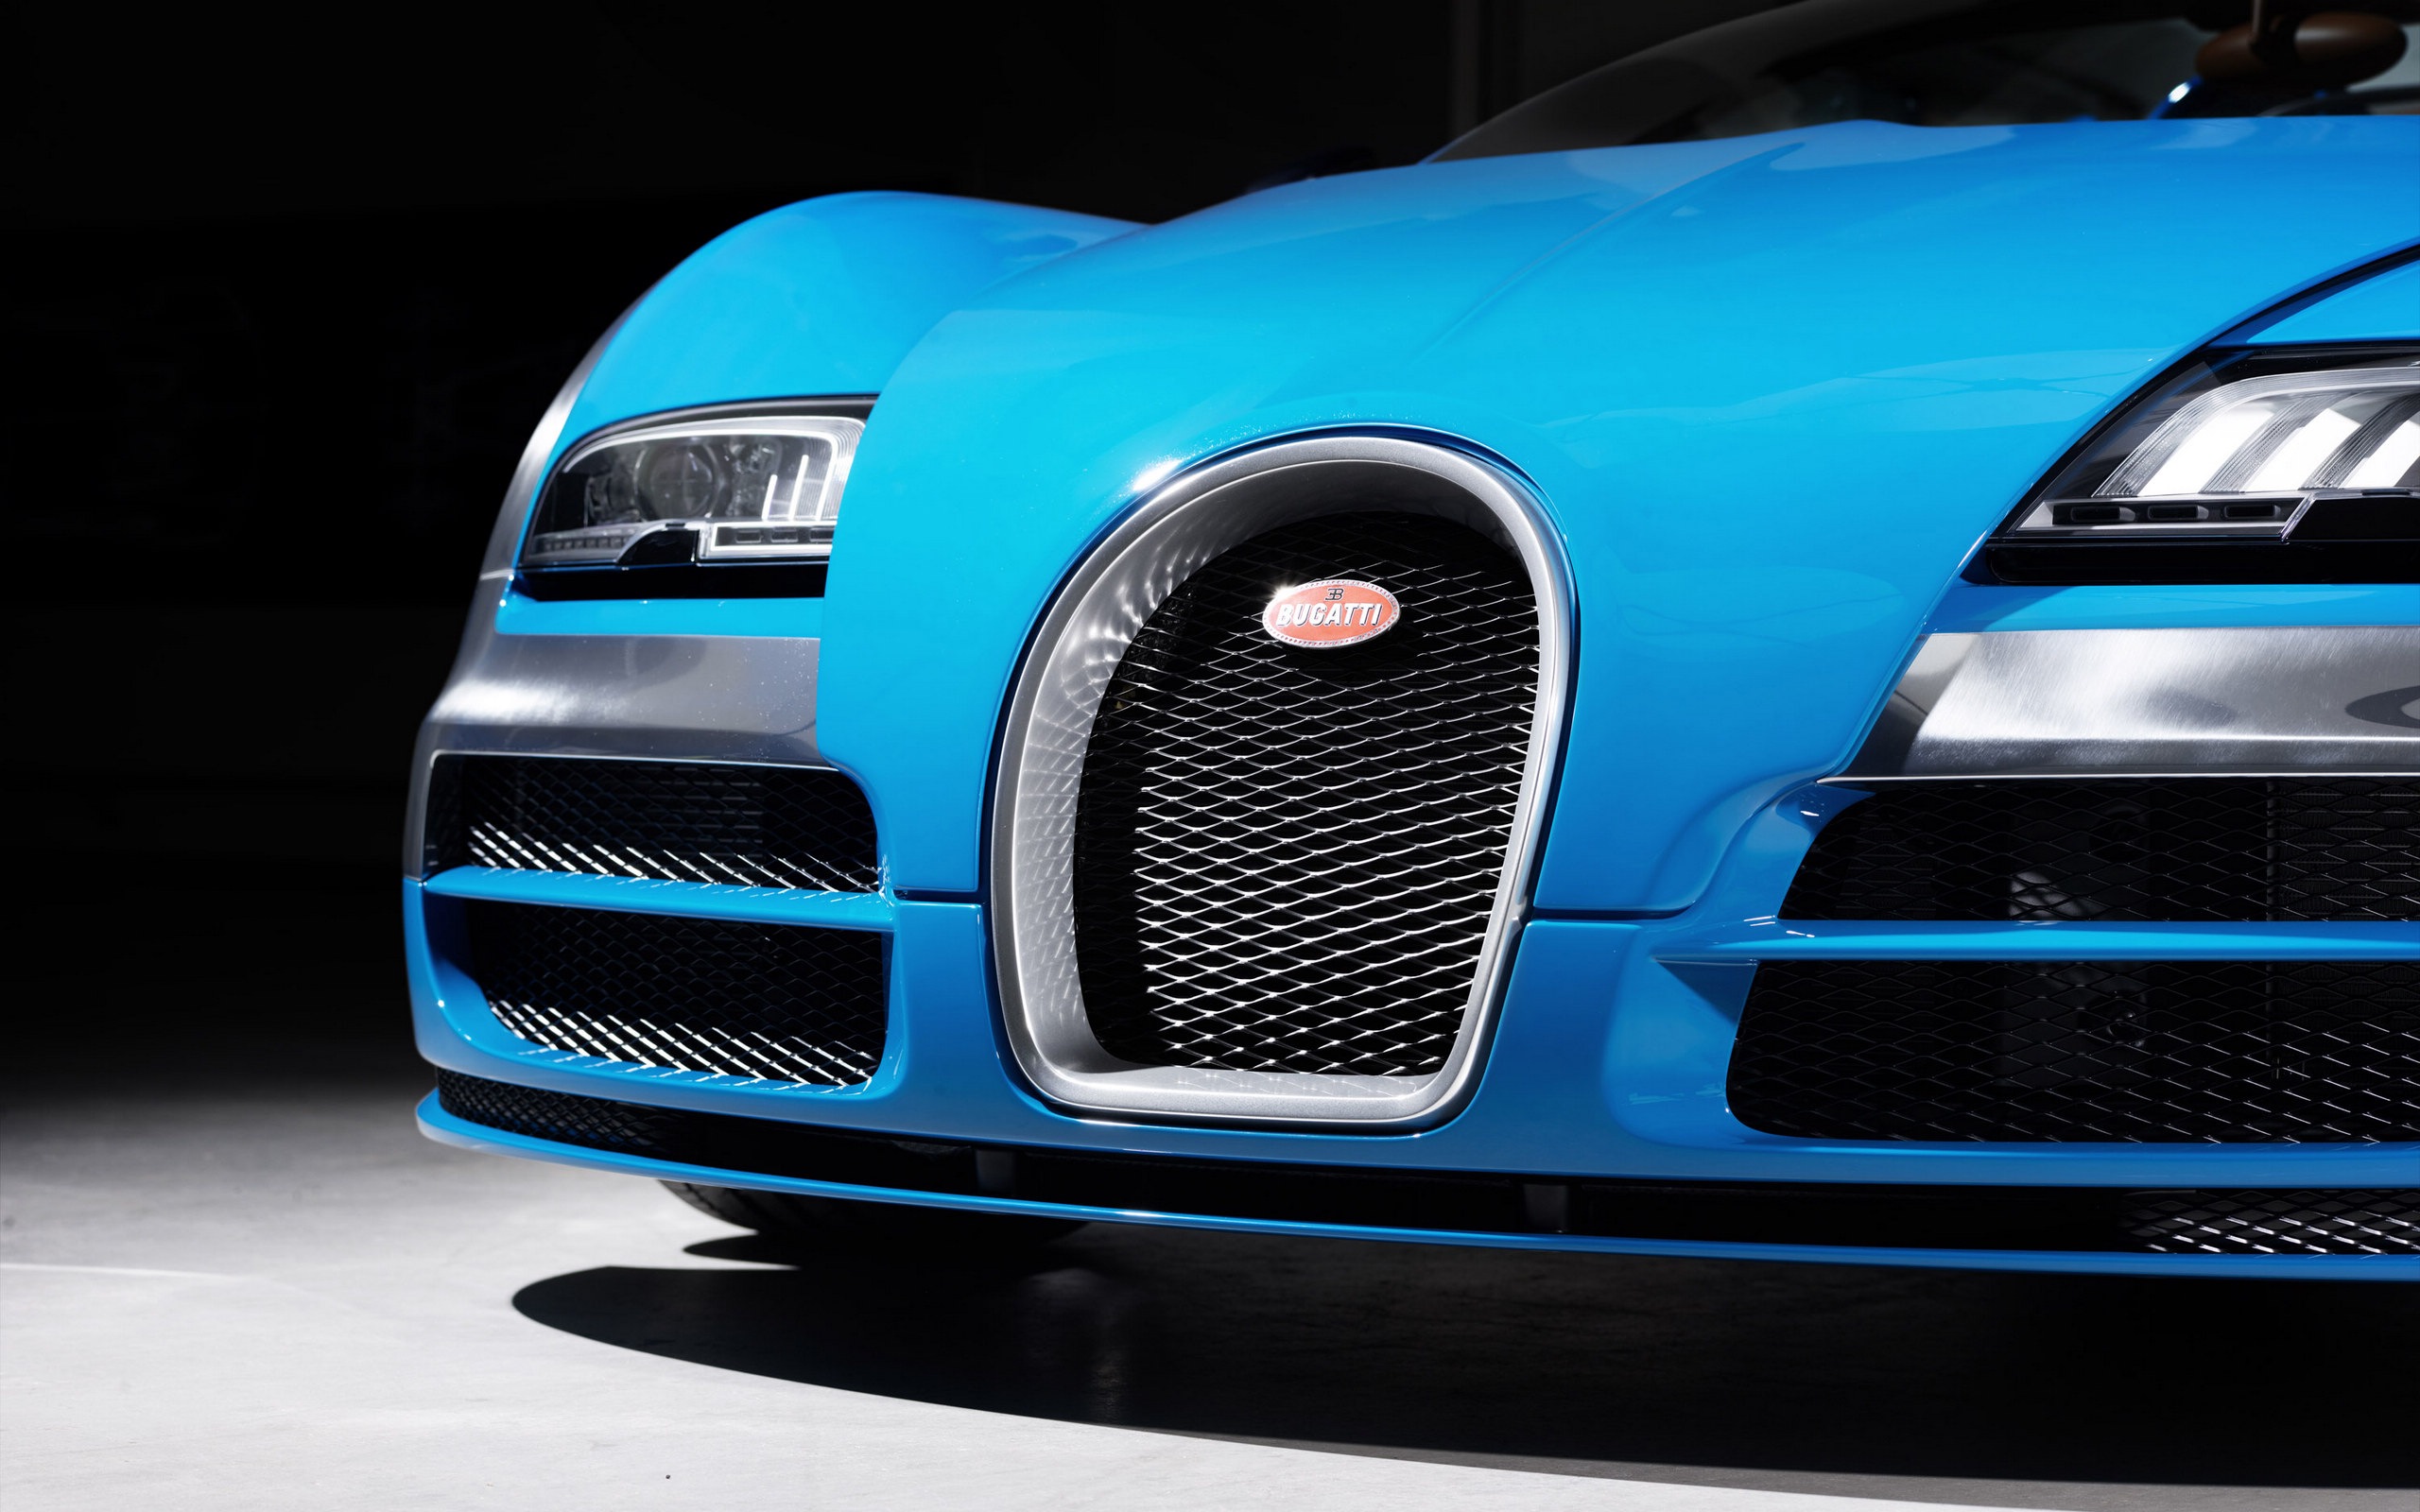 2013 Bugatti Veyron 16.4 Grand Sport Vitesse supercar fondos de pantalla de alta definición #3 - 2560x1600